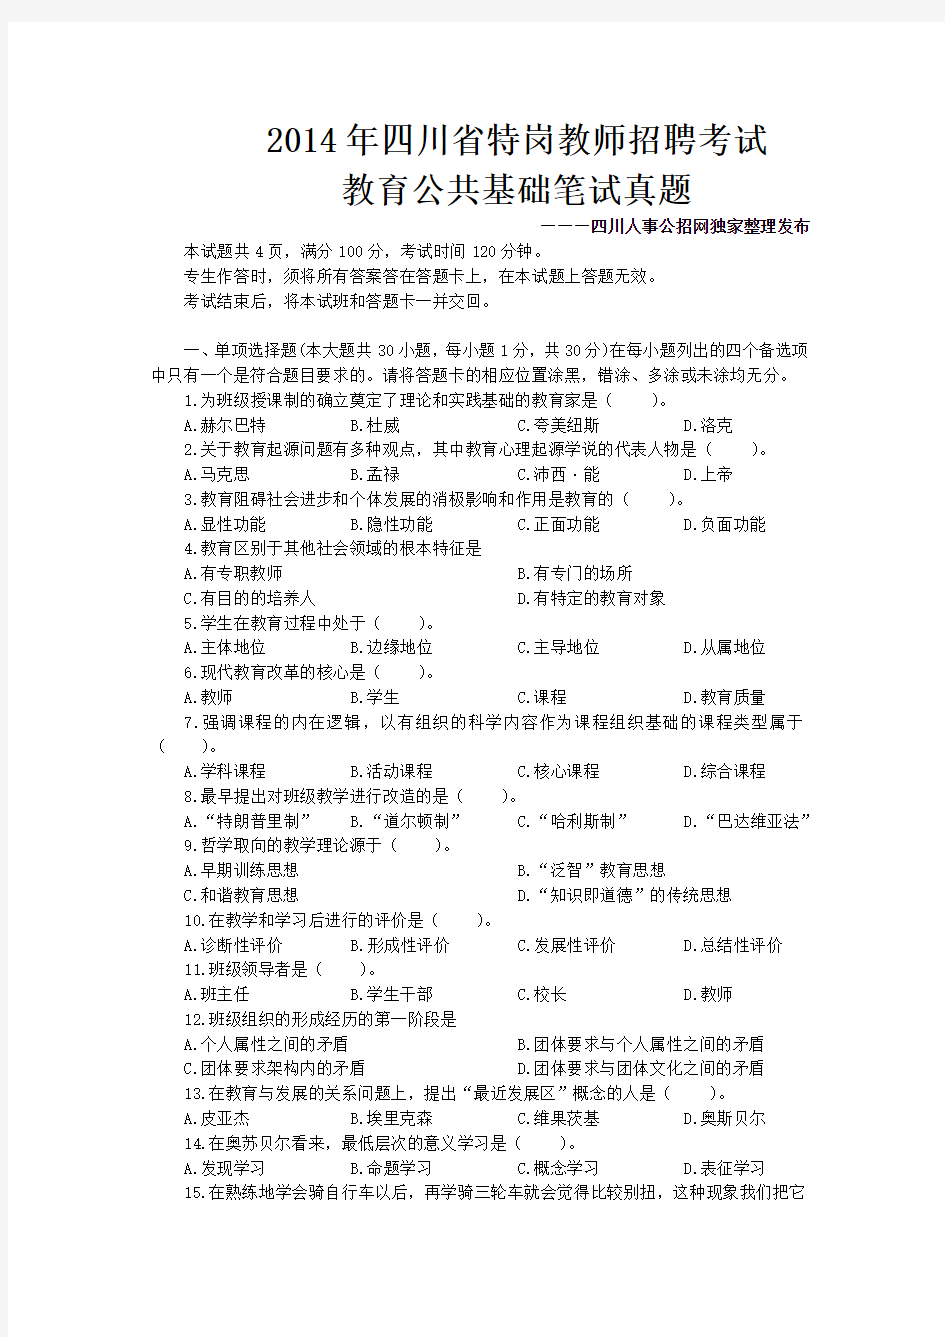 2014年6月9日四川省特岗教师招聘考试《教育公共基础知识》真题